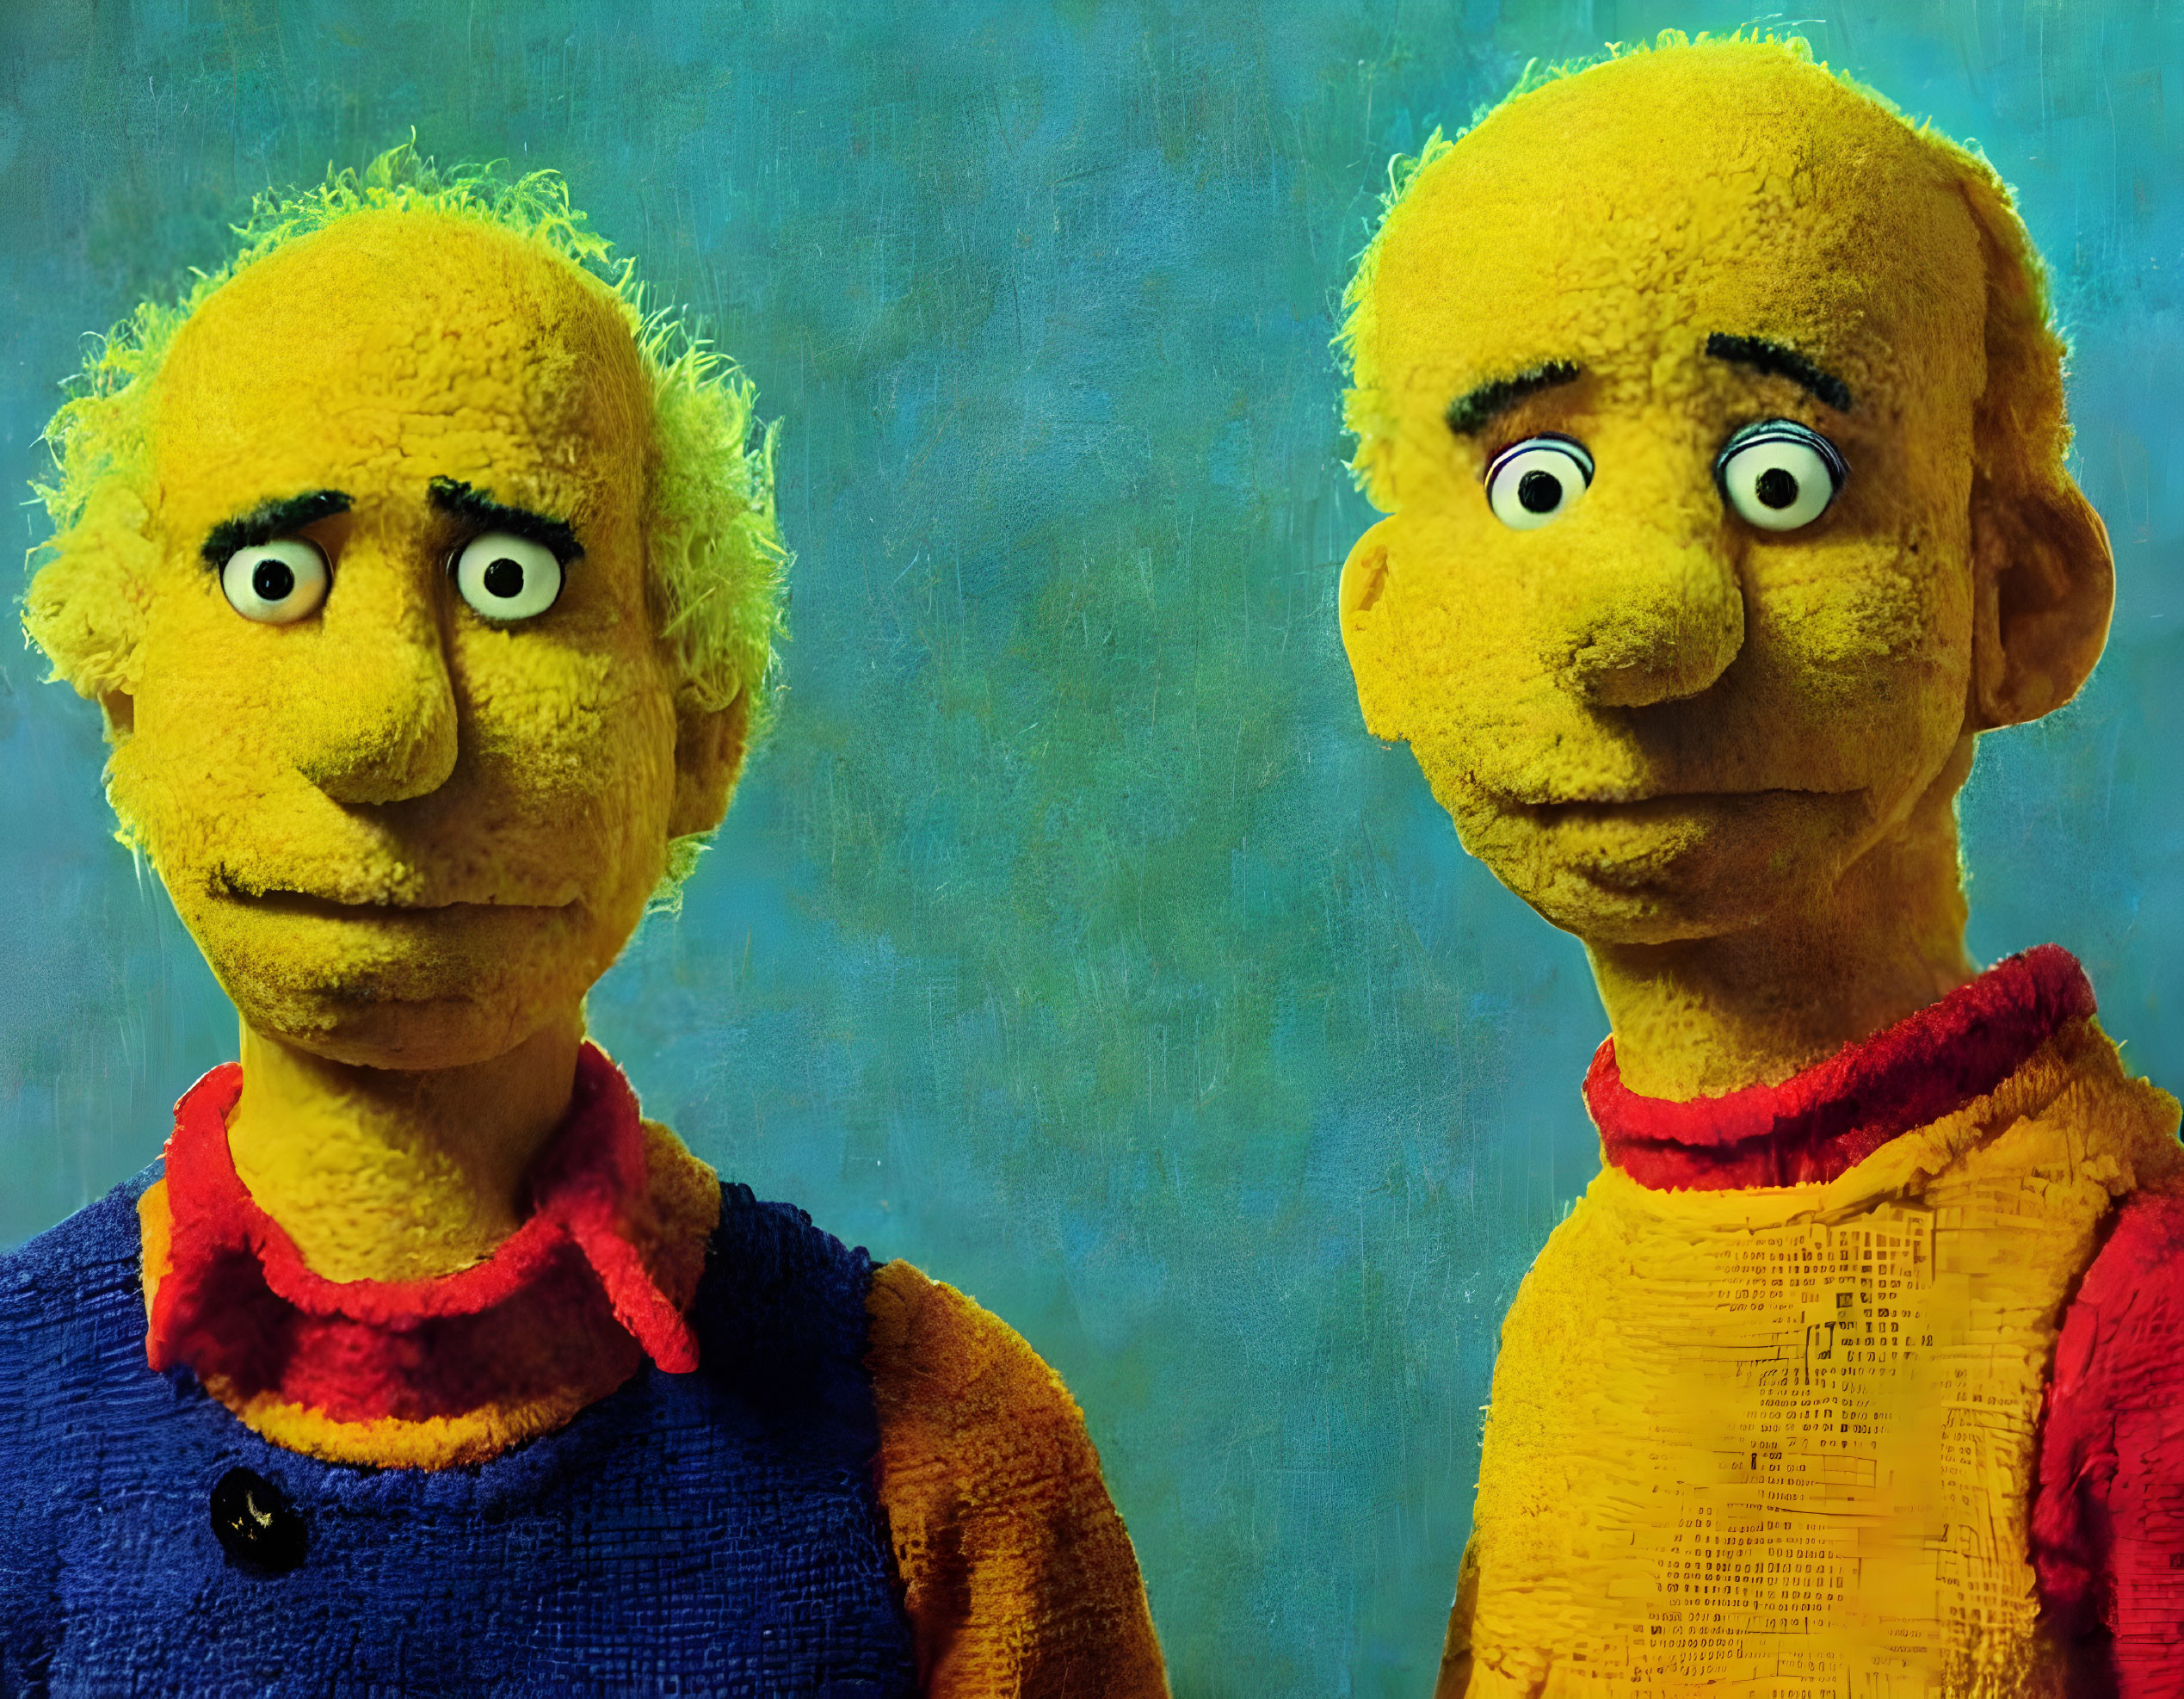 Simon and Garfunkel as Bert and Ernie